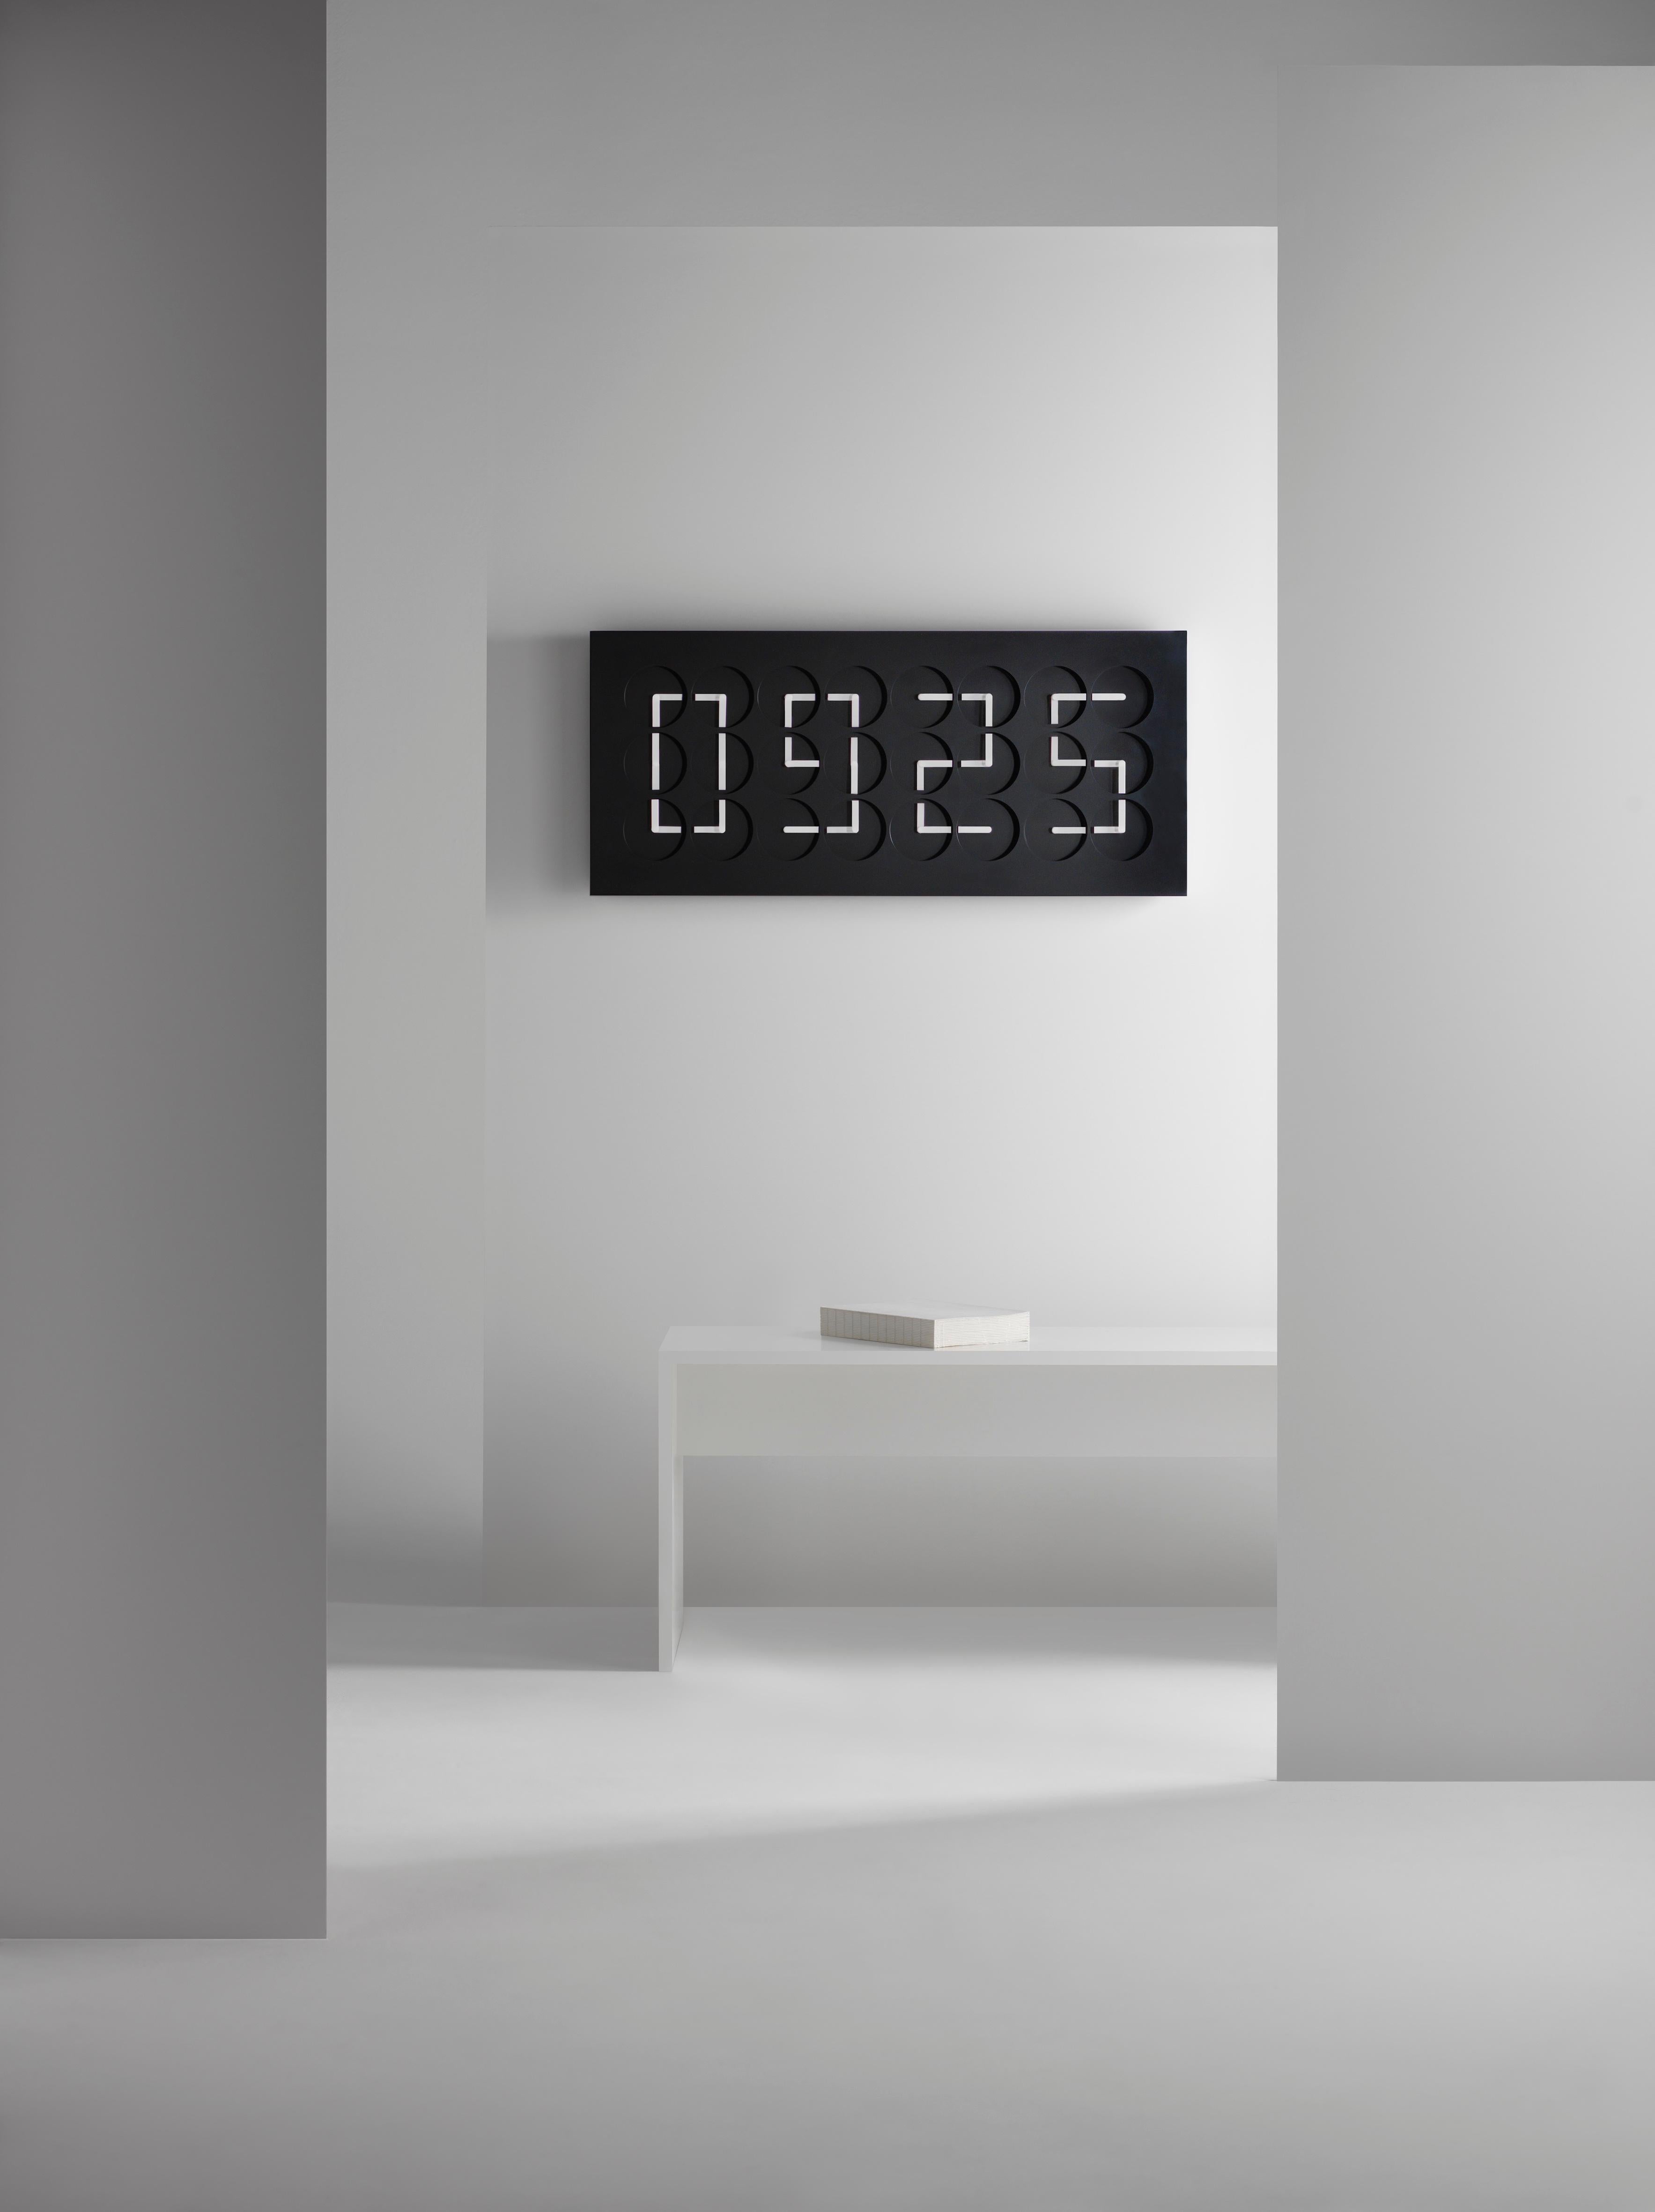 Suédois Horloge 24 Black par Humans since 1982, sculpture cinétique, horloge murale